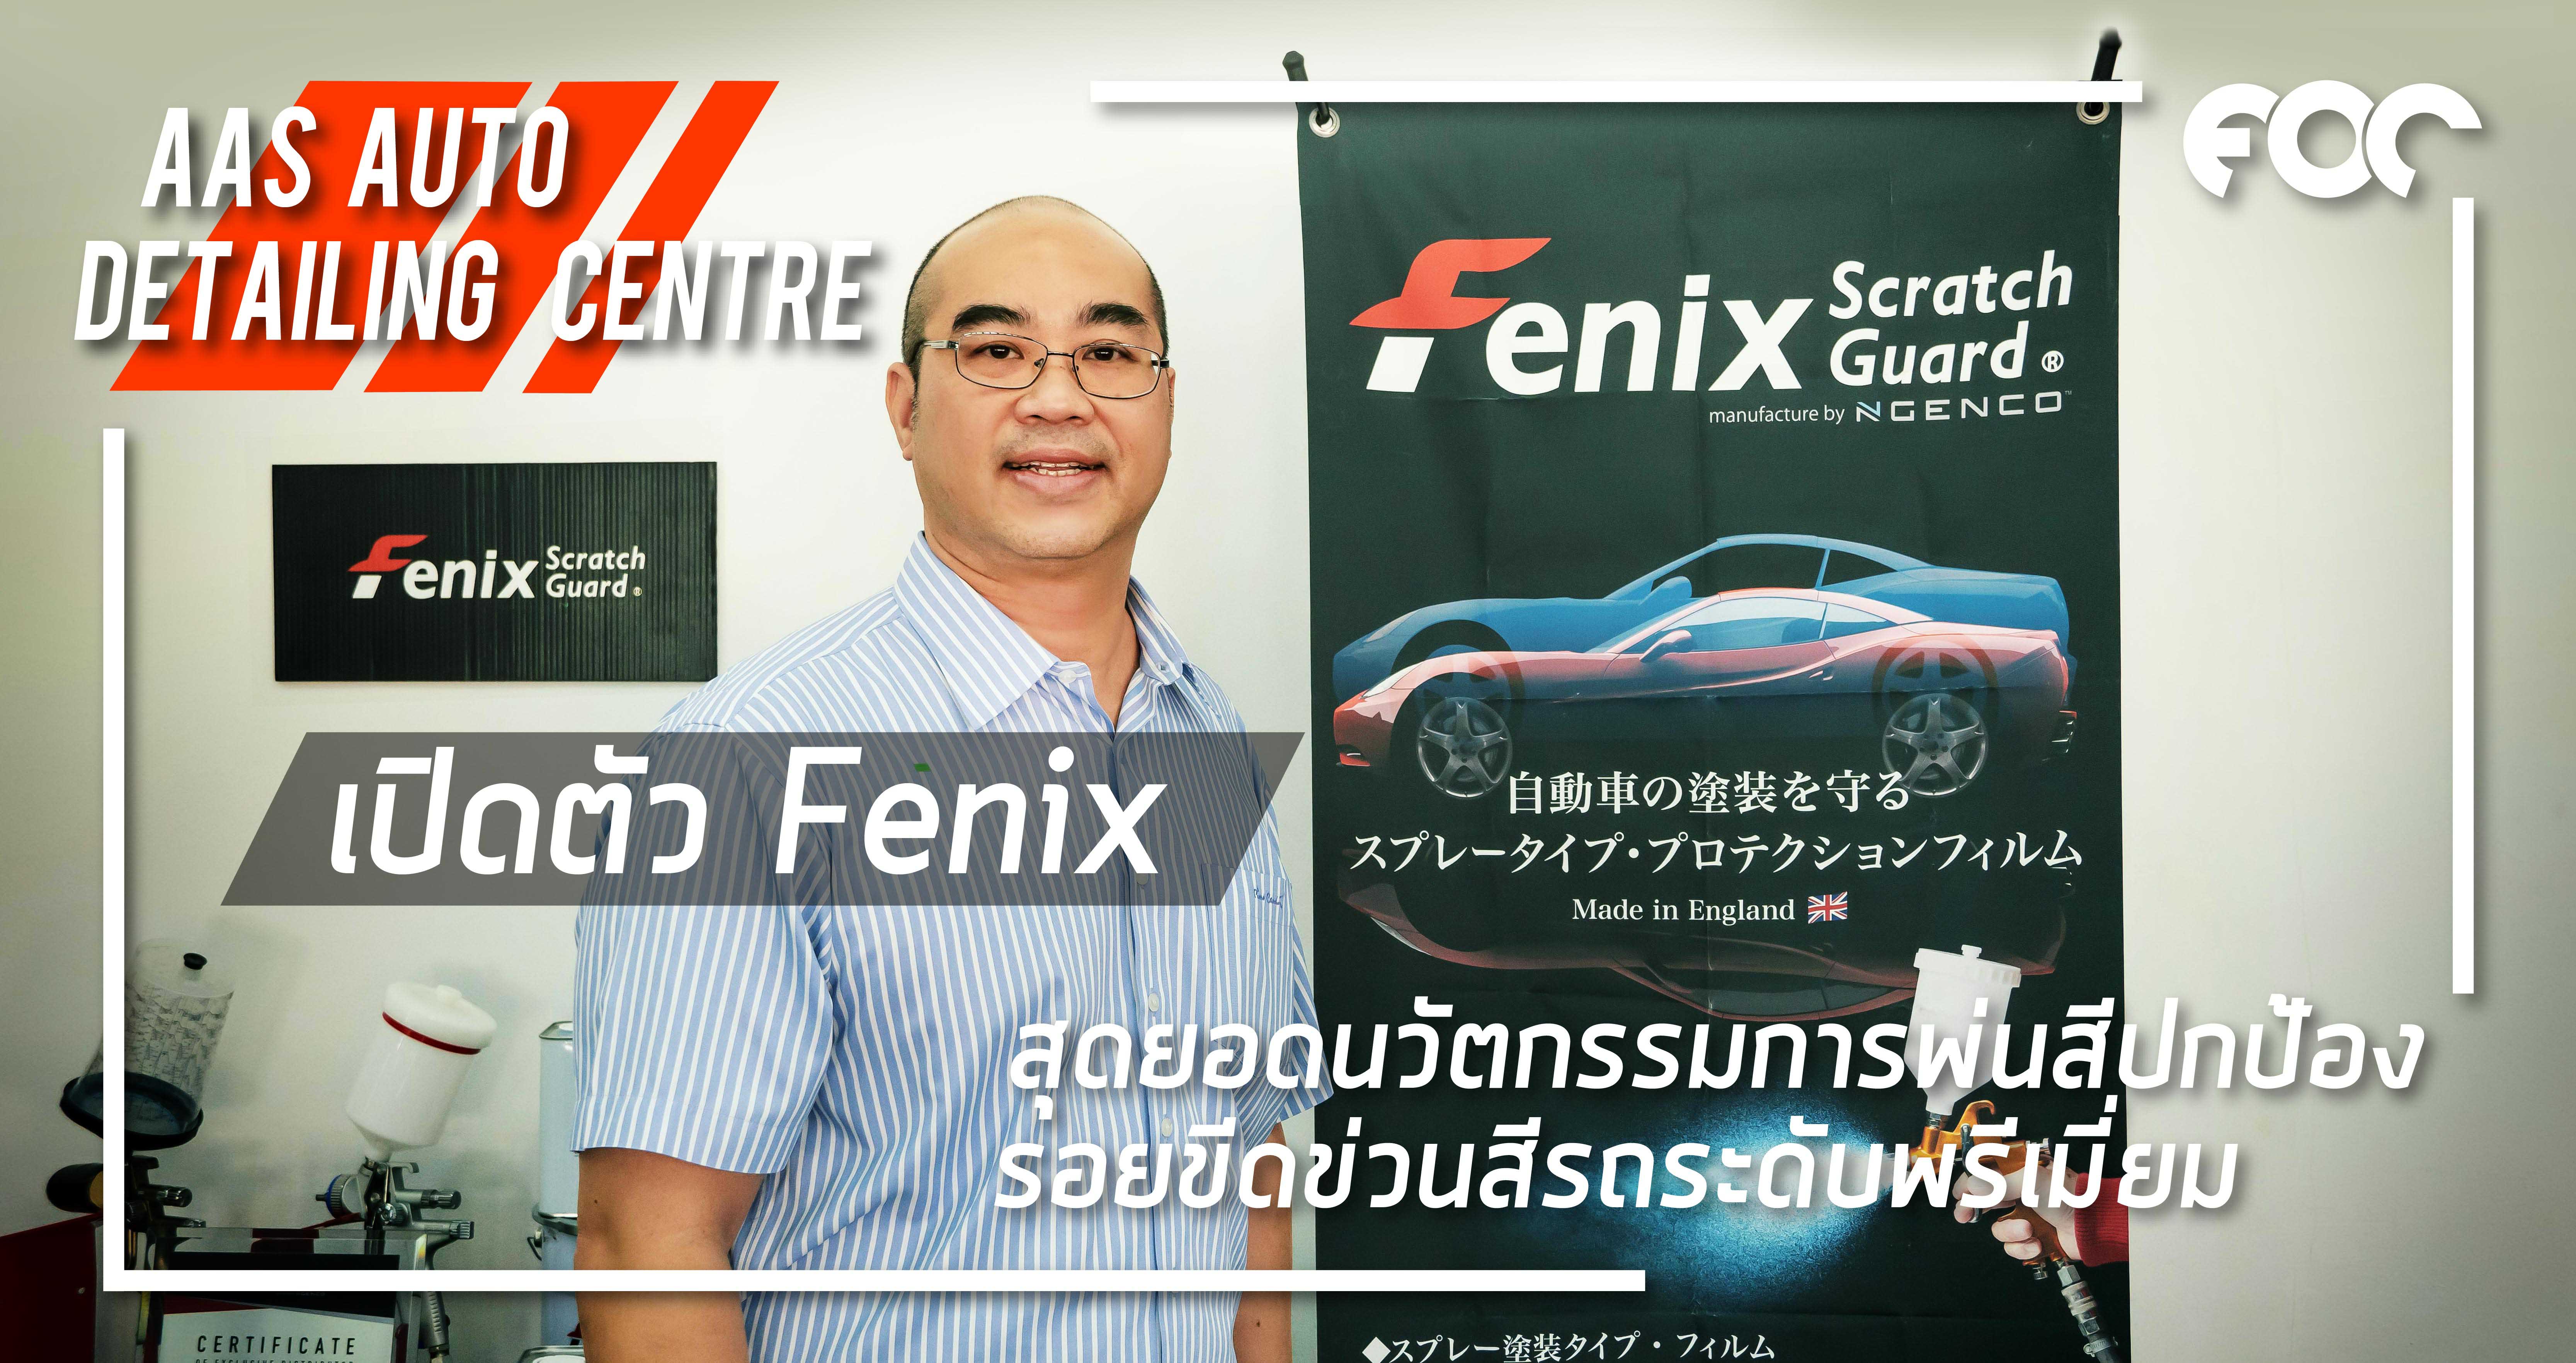 AAS Auto Detailing Centre เปิดตัว Fenix สุดยอดนวัตกรรมการพ่นสีปกป้องรอยขีดช่วนสีรถระดับพรีเมี่ยม